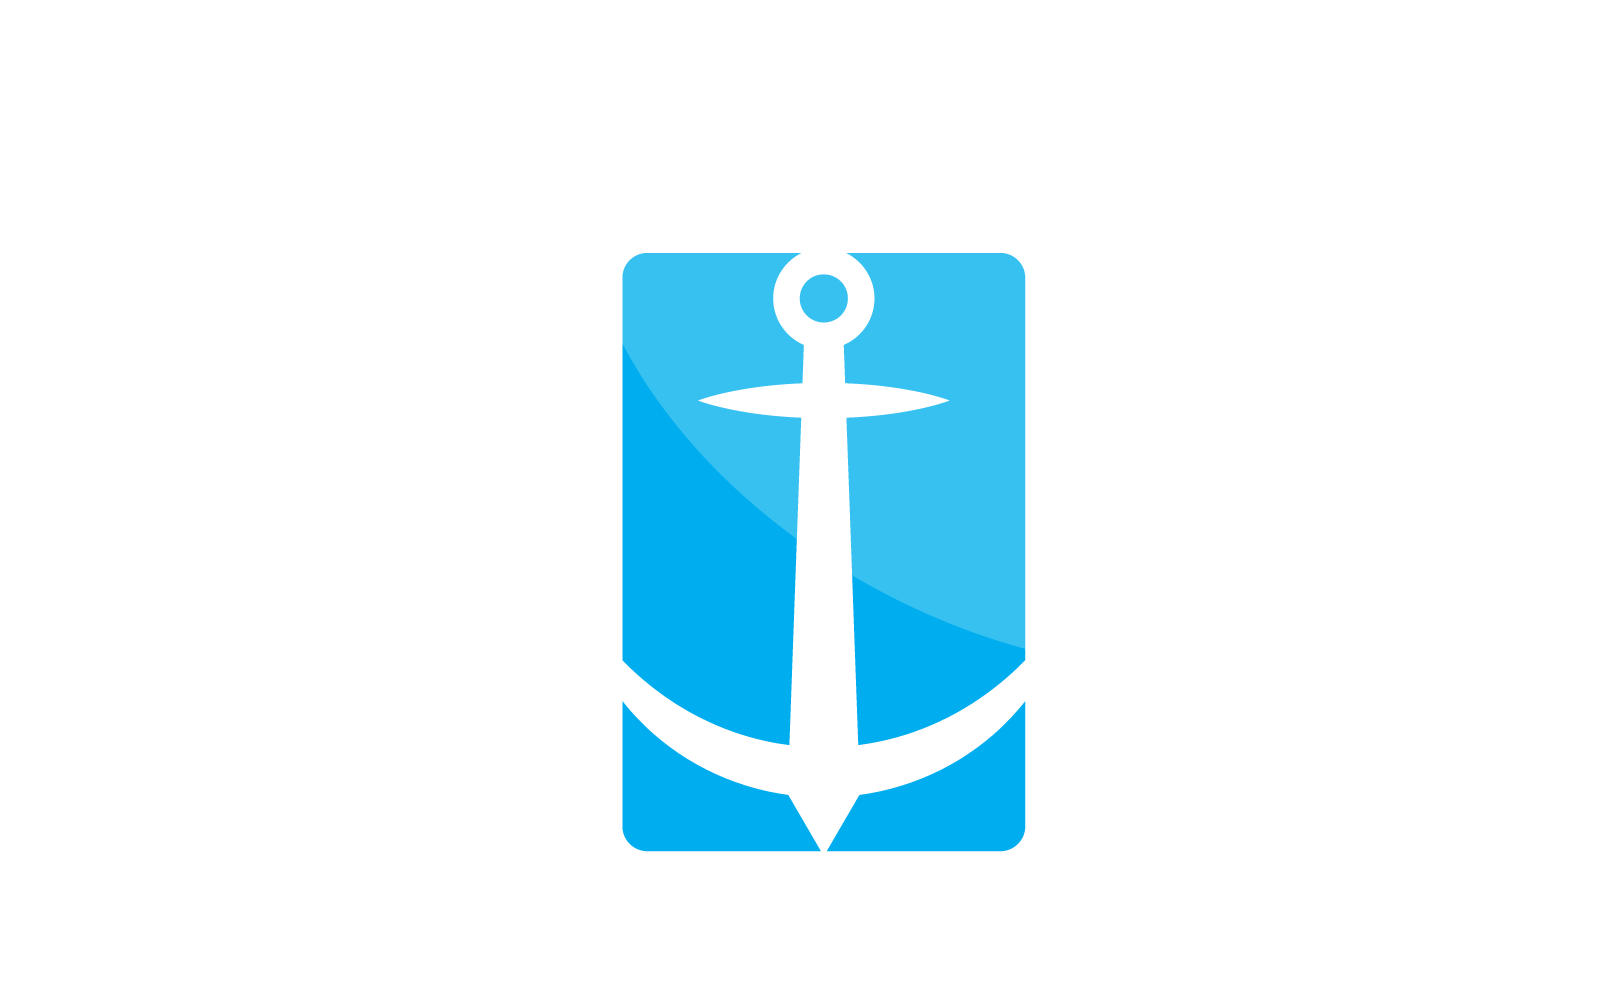 Anchor logo illustration template icon vector design